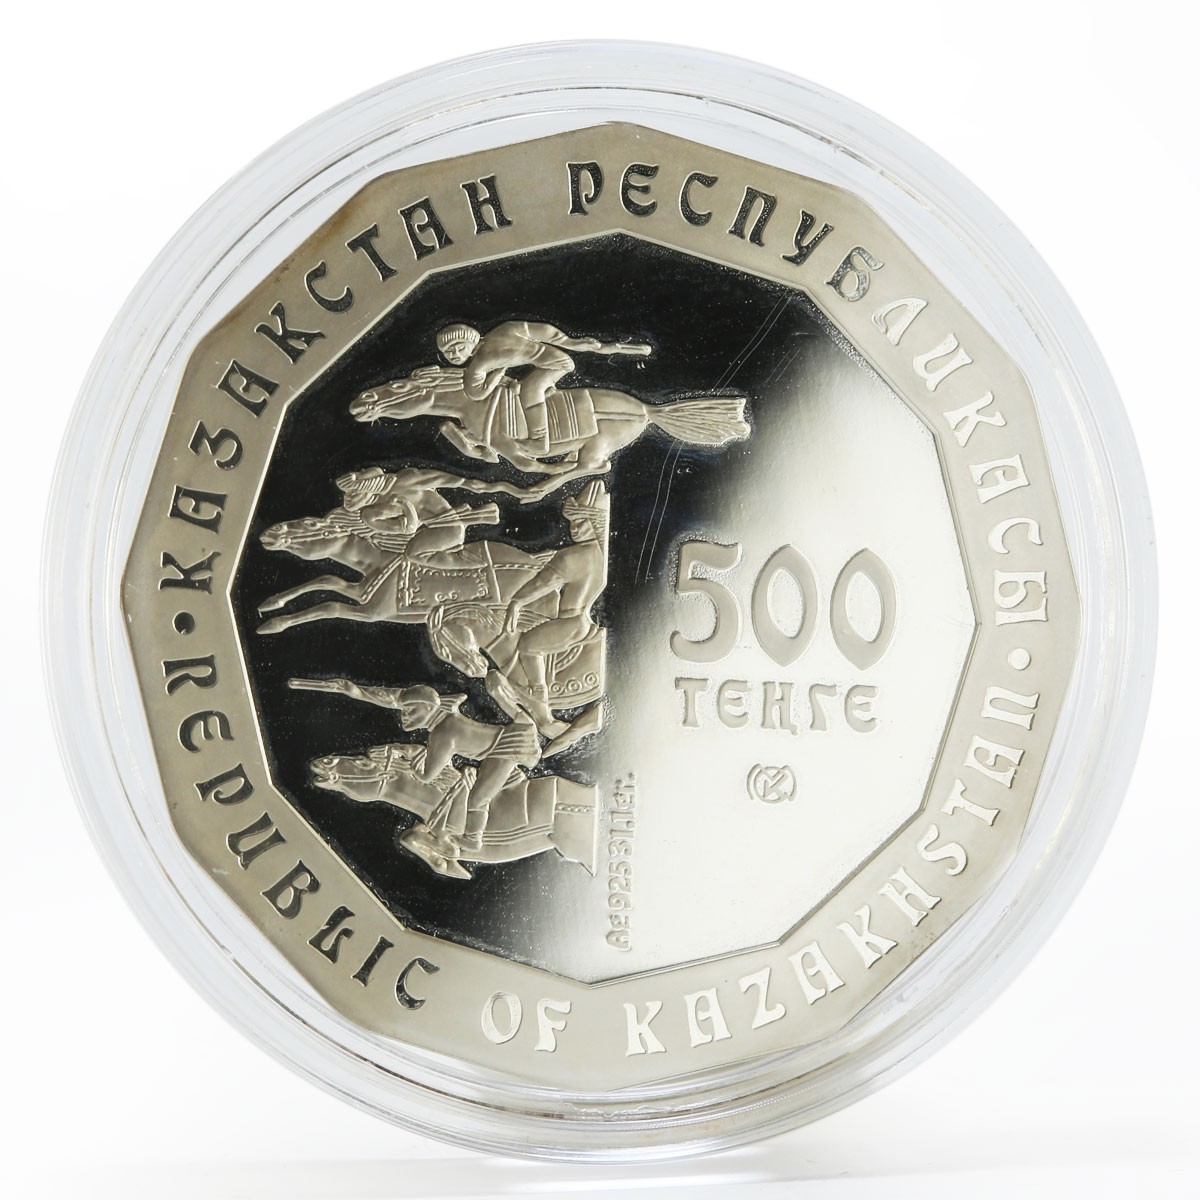 Kazakhstan 500 tenge The Golden Deer proof silver coin 2004